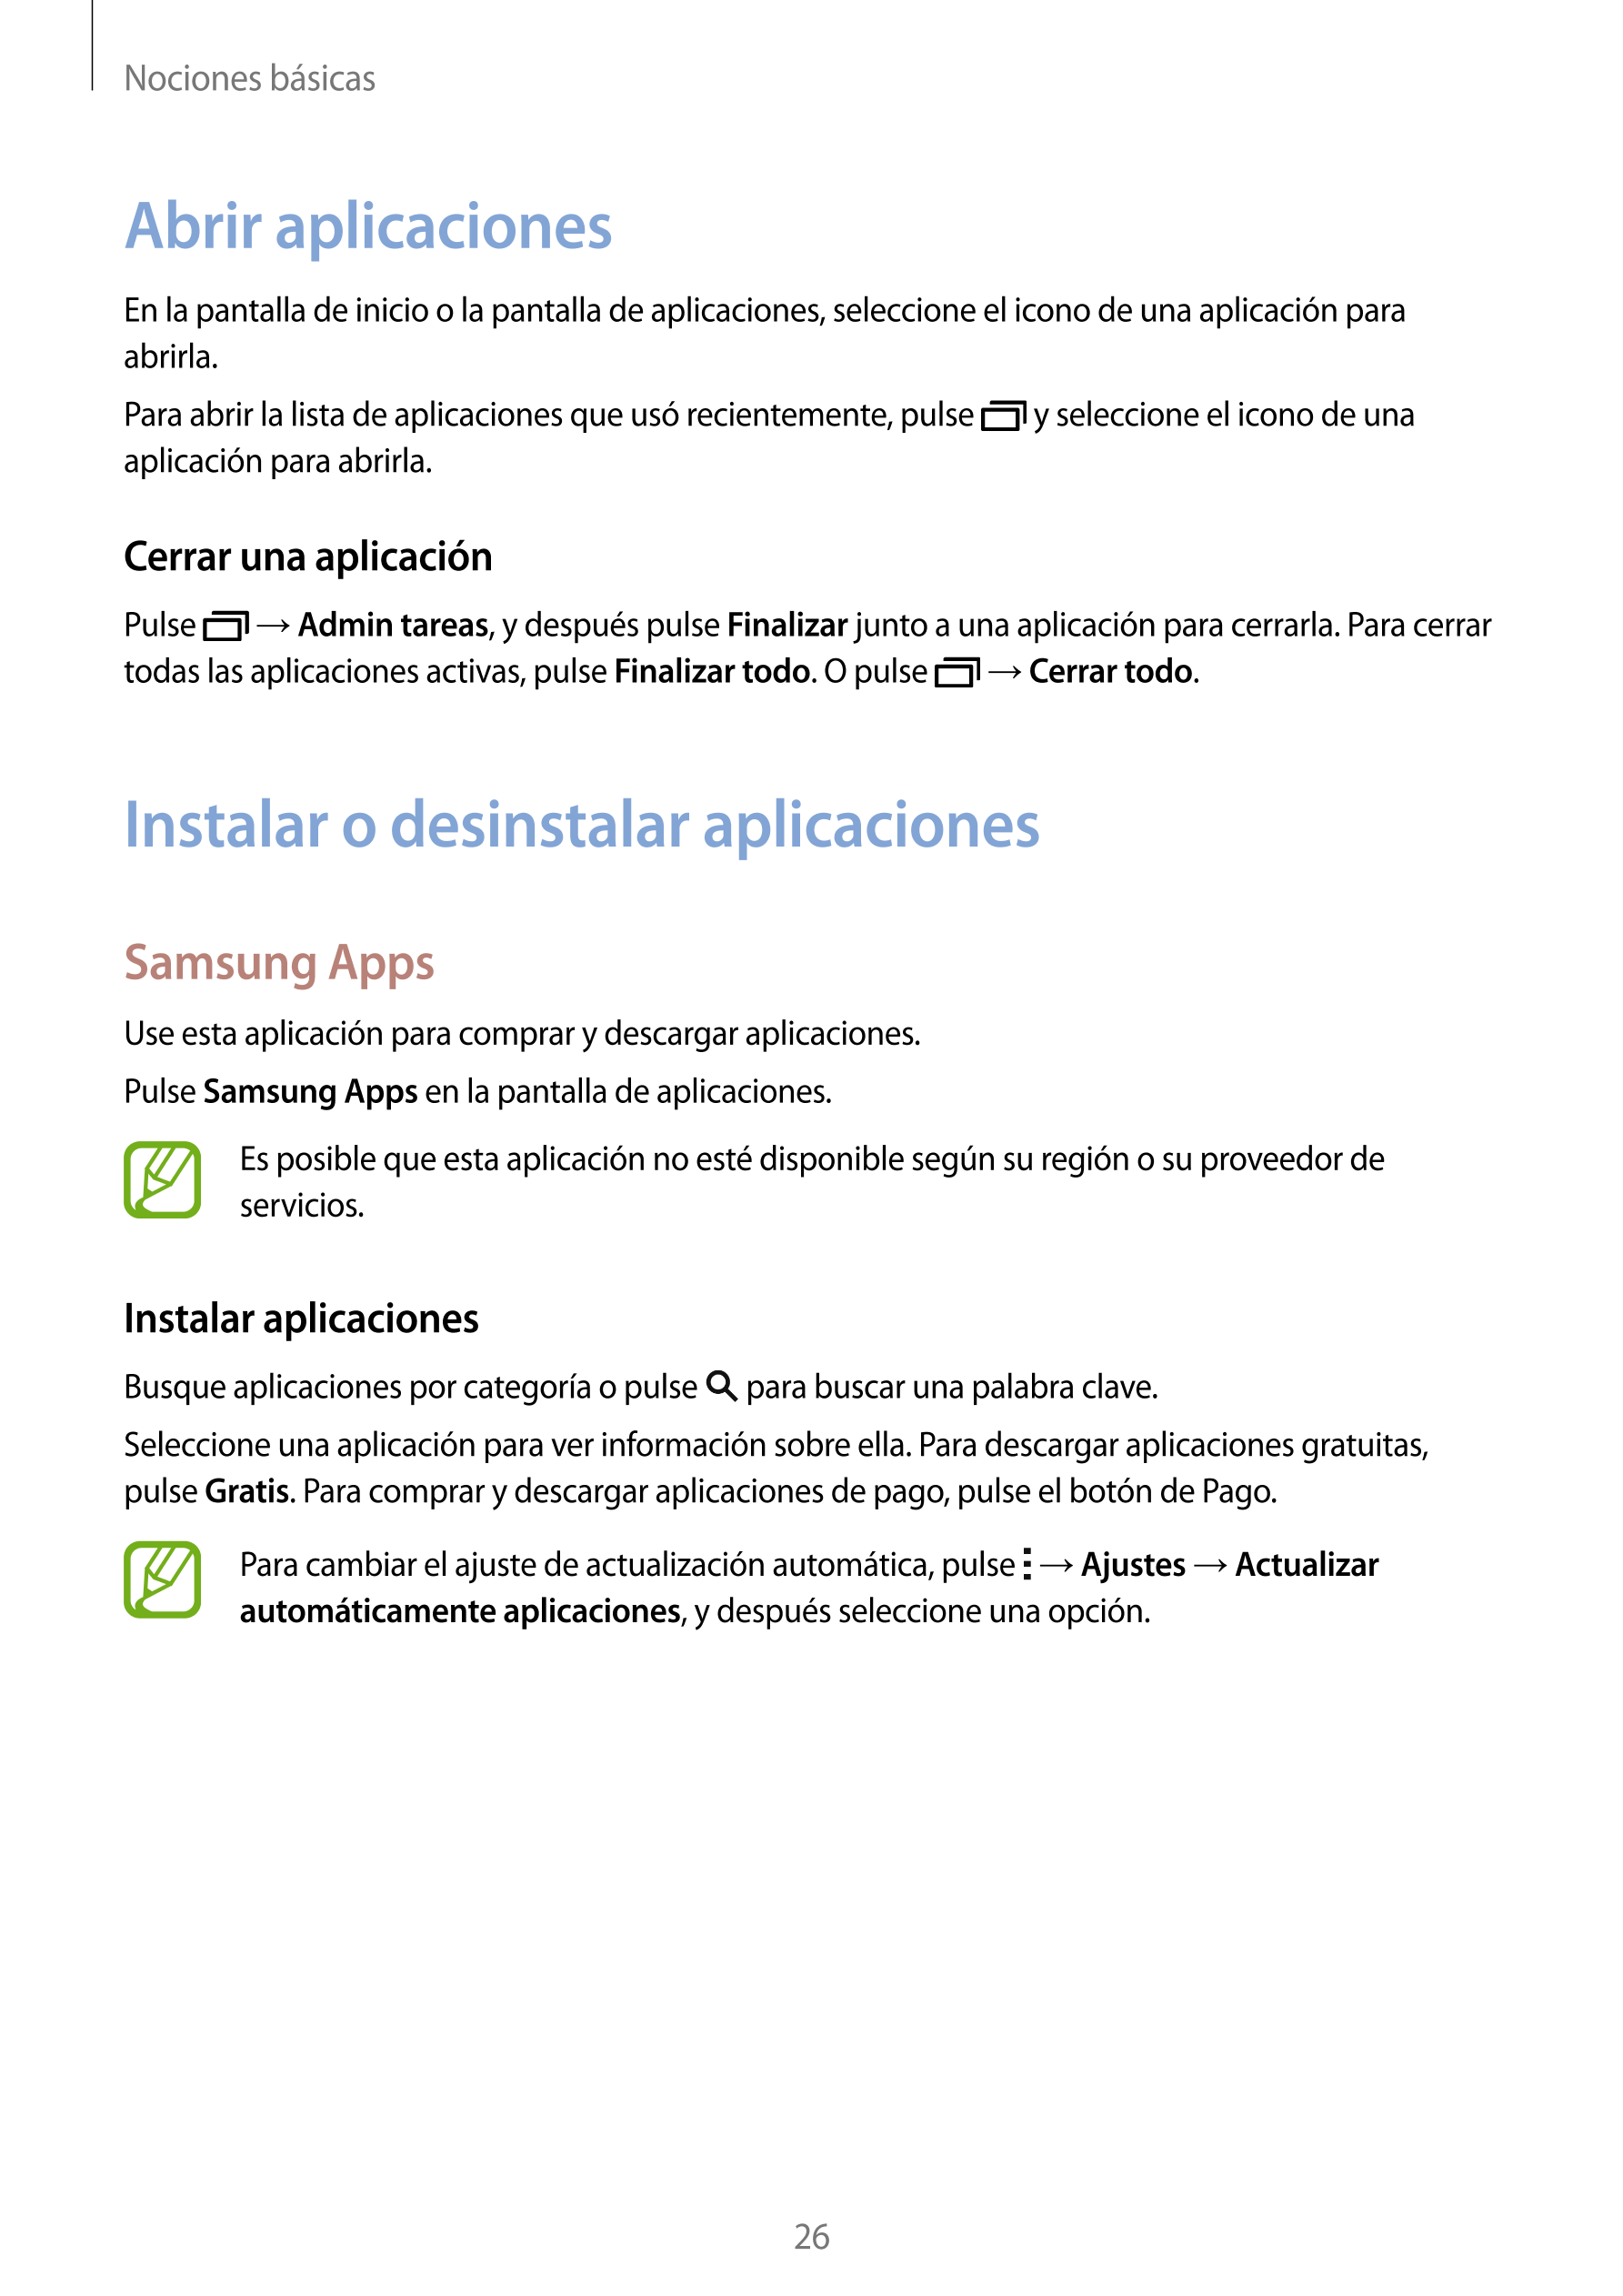 Nociones básicas
Abrir aplicaciones
En la pantalla de inicio o la pantalla de aplicaciones, seleccione el icono de una aplicació